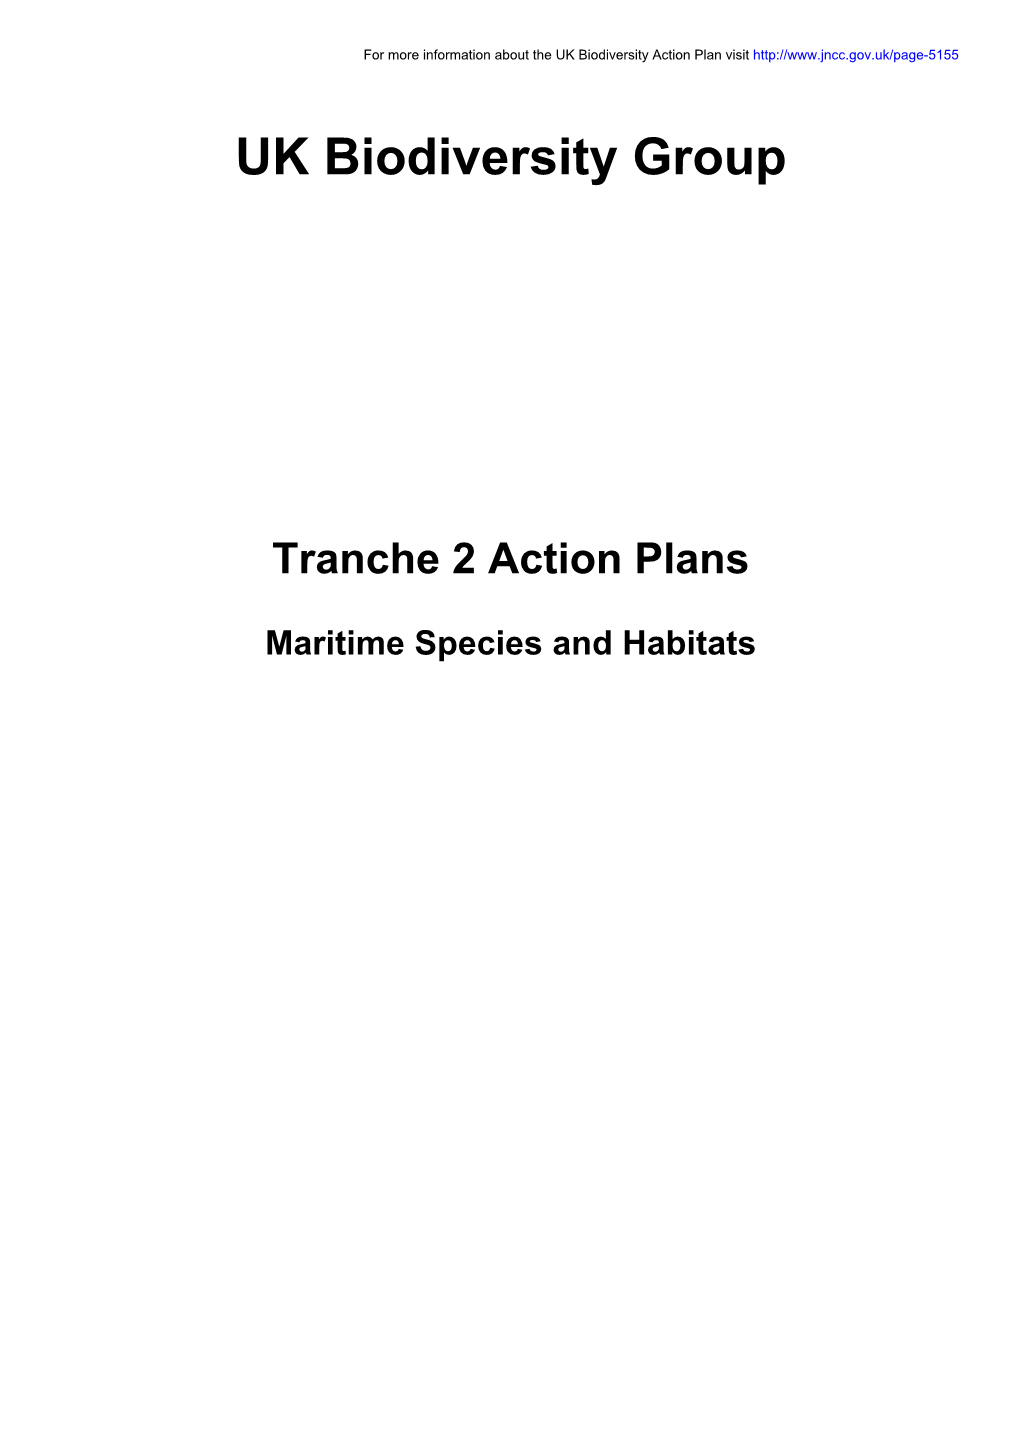 Tranche 2 Action Plans